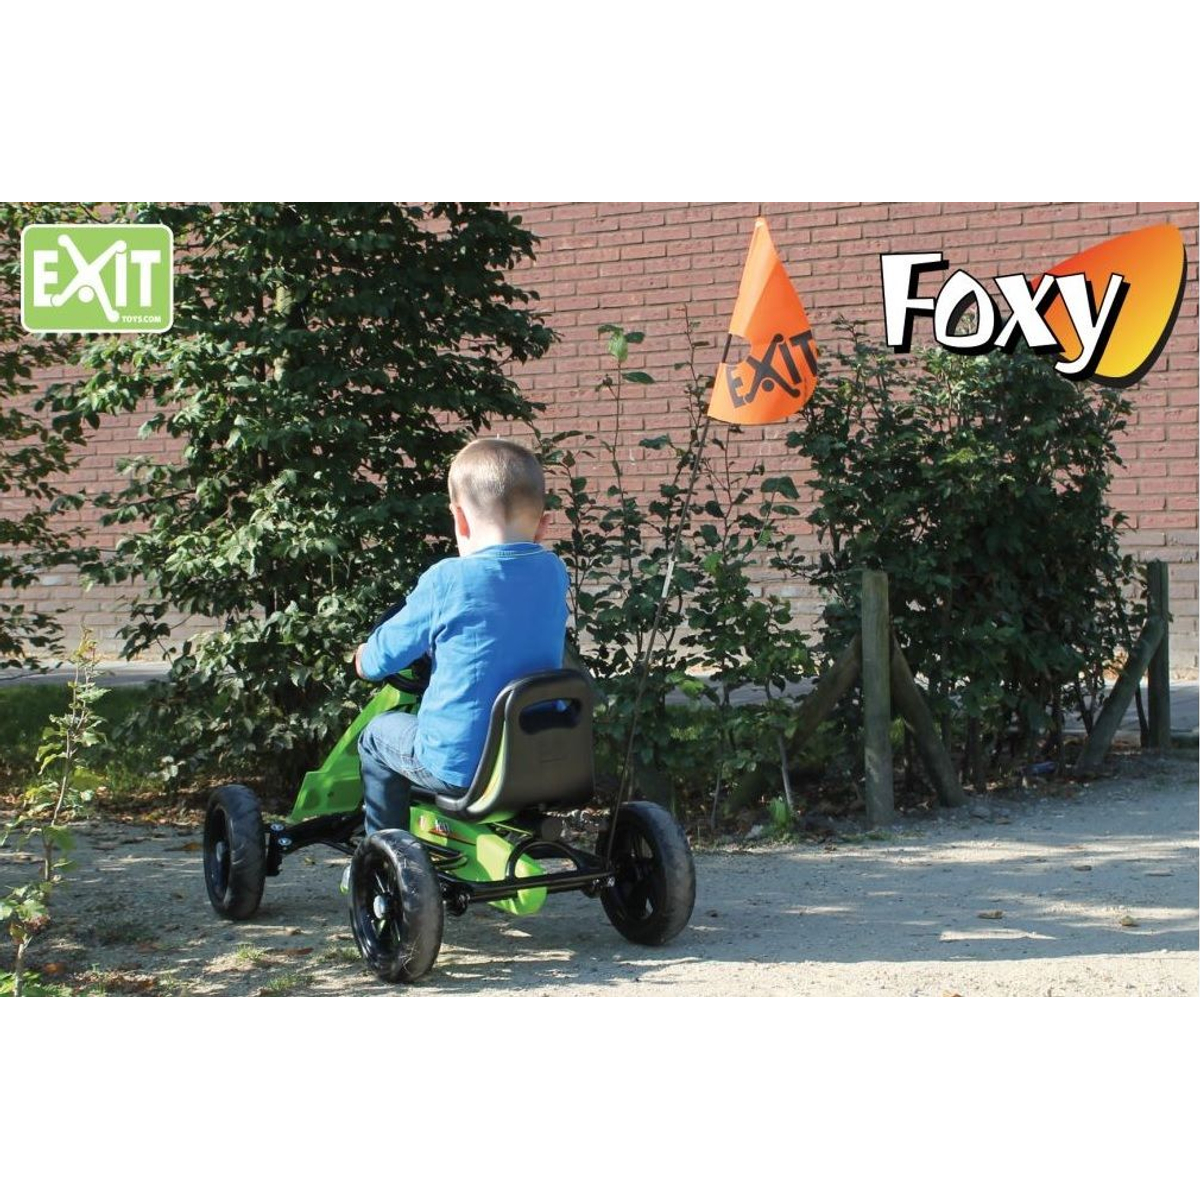 EXIT Veiligheidsvlag (Foxy/Spider)